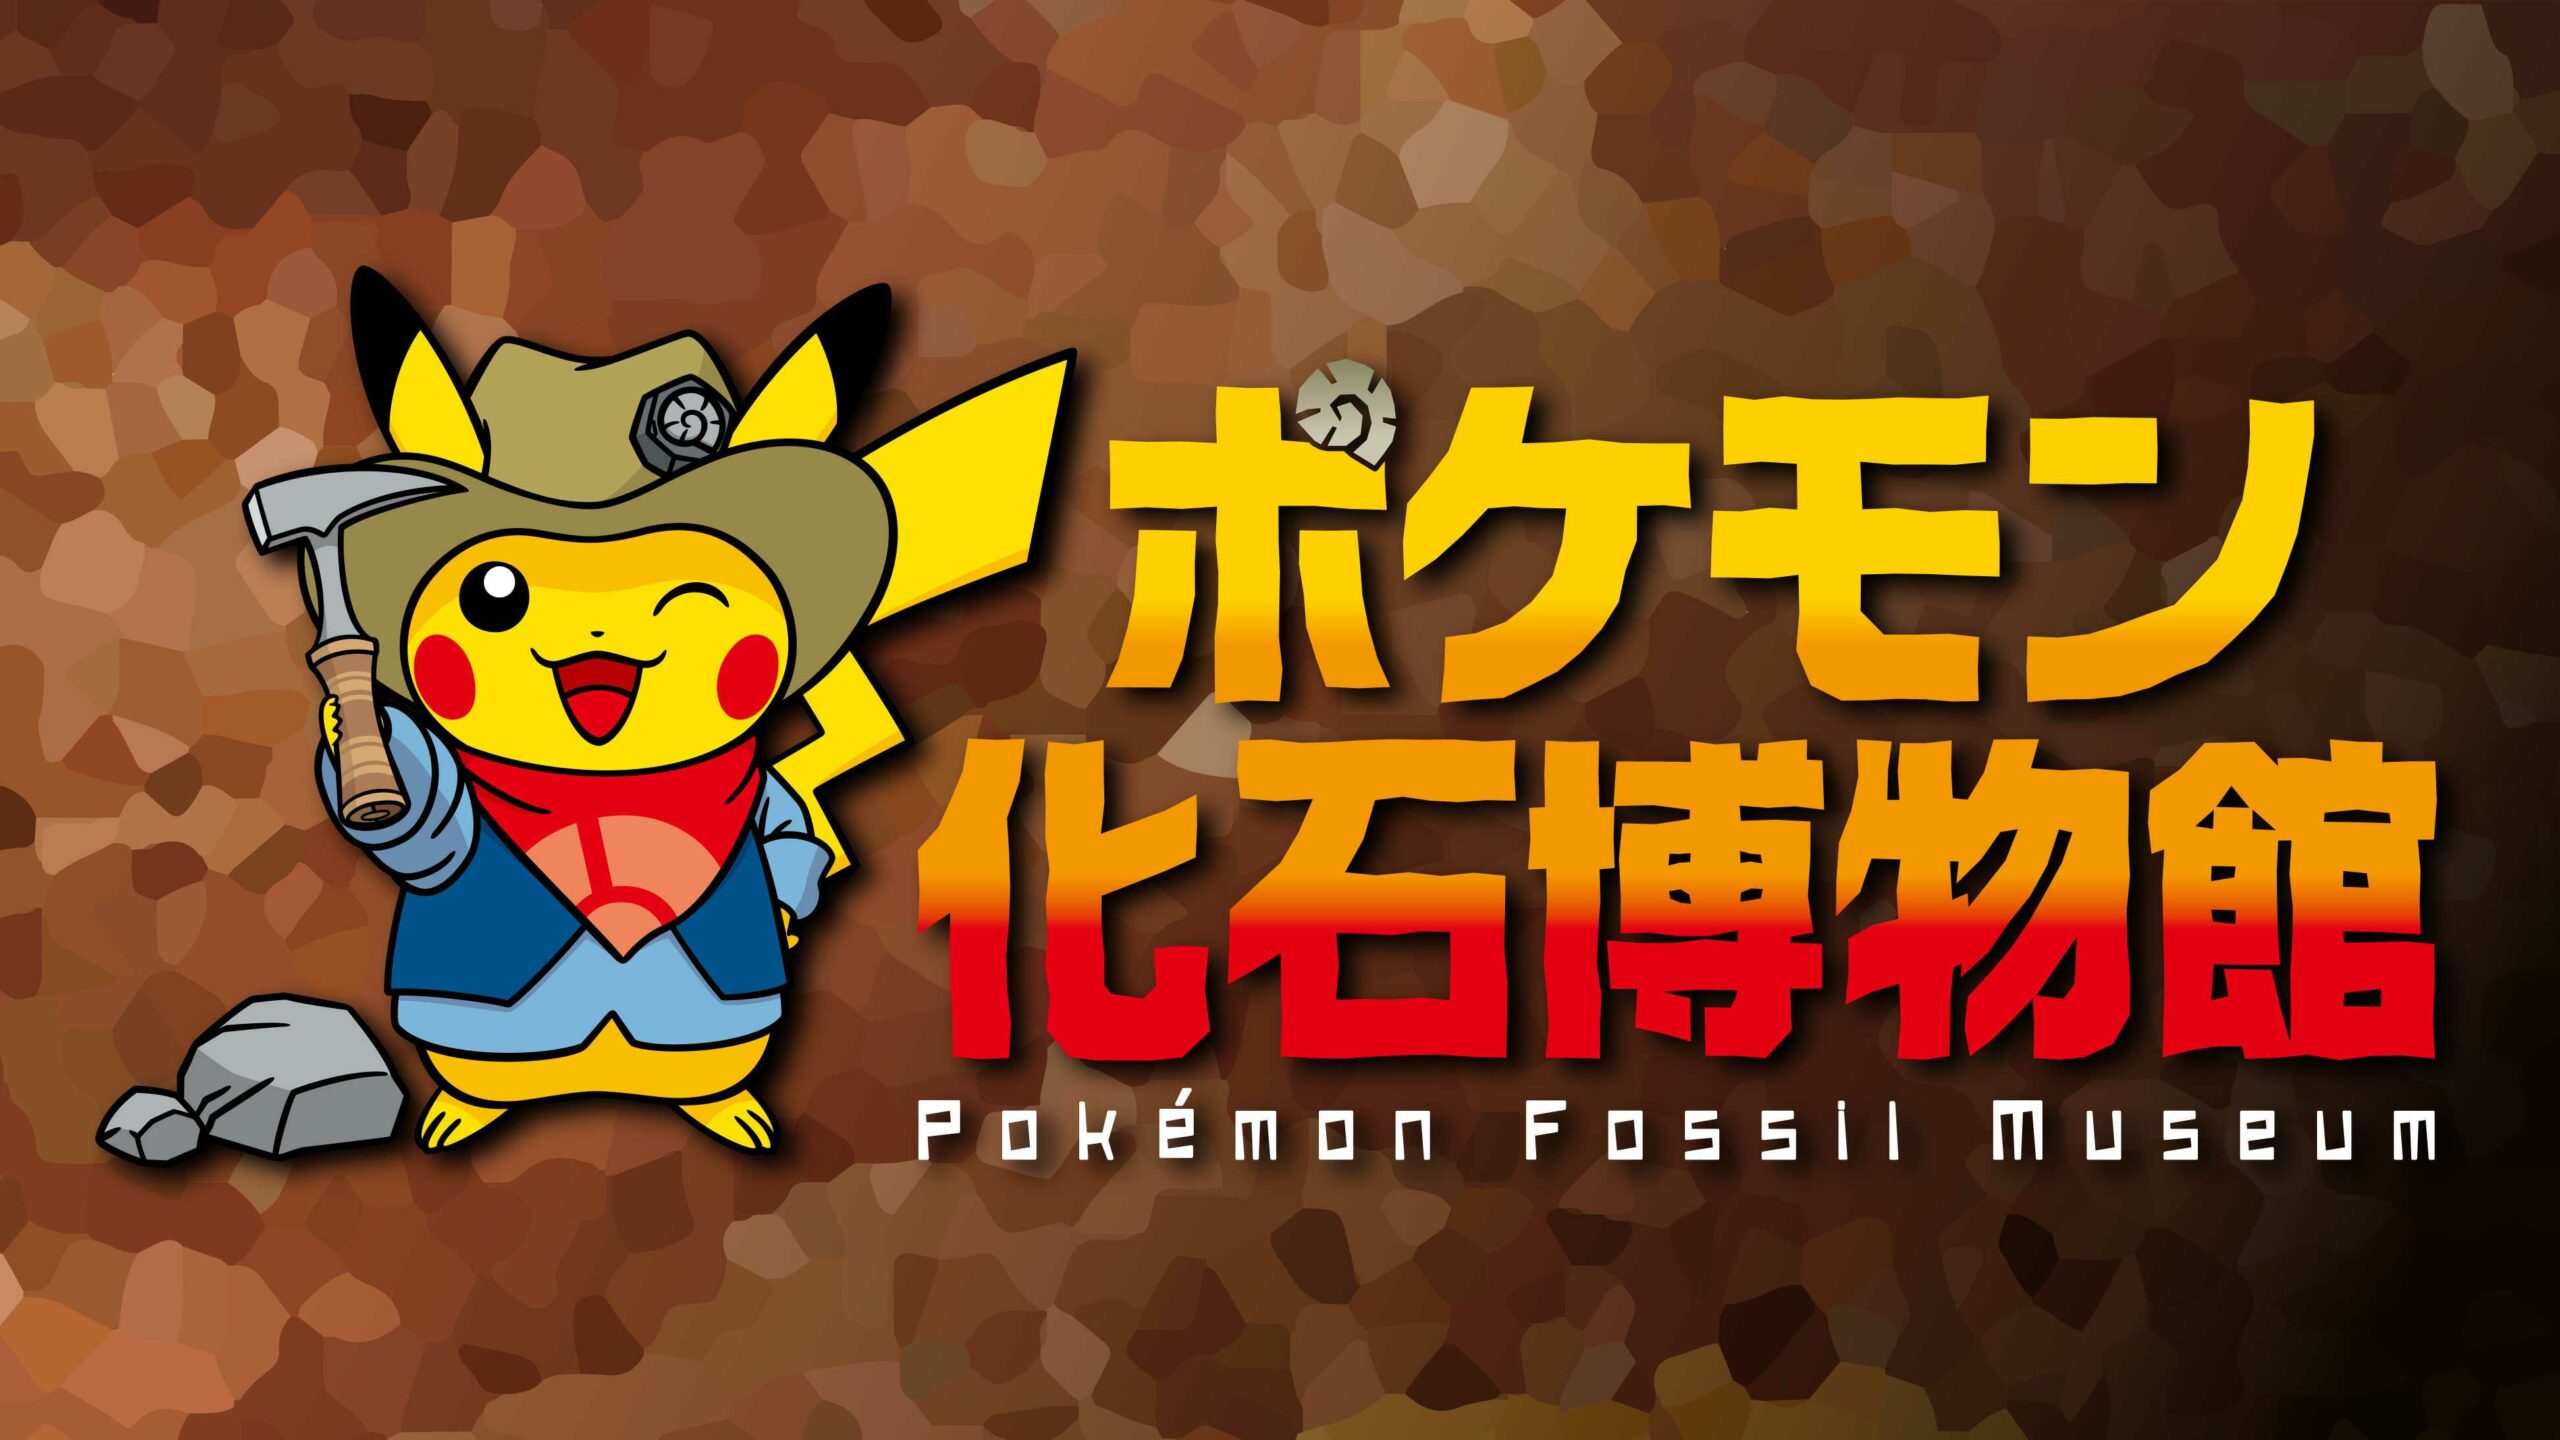 #Pokémon-Museum mit „echten“ Pokémon-Fossilien öffnet in Kürze wieder seine Pforten